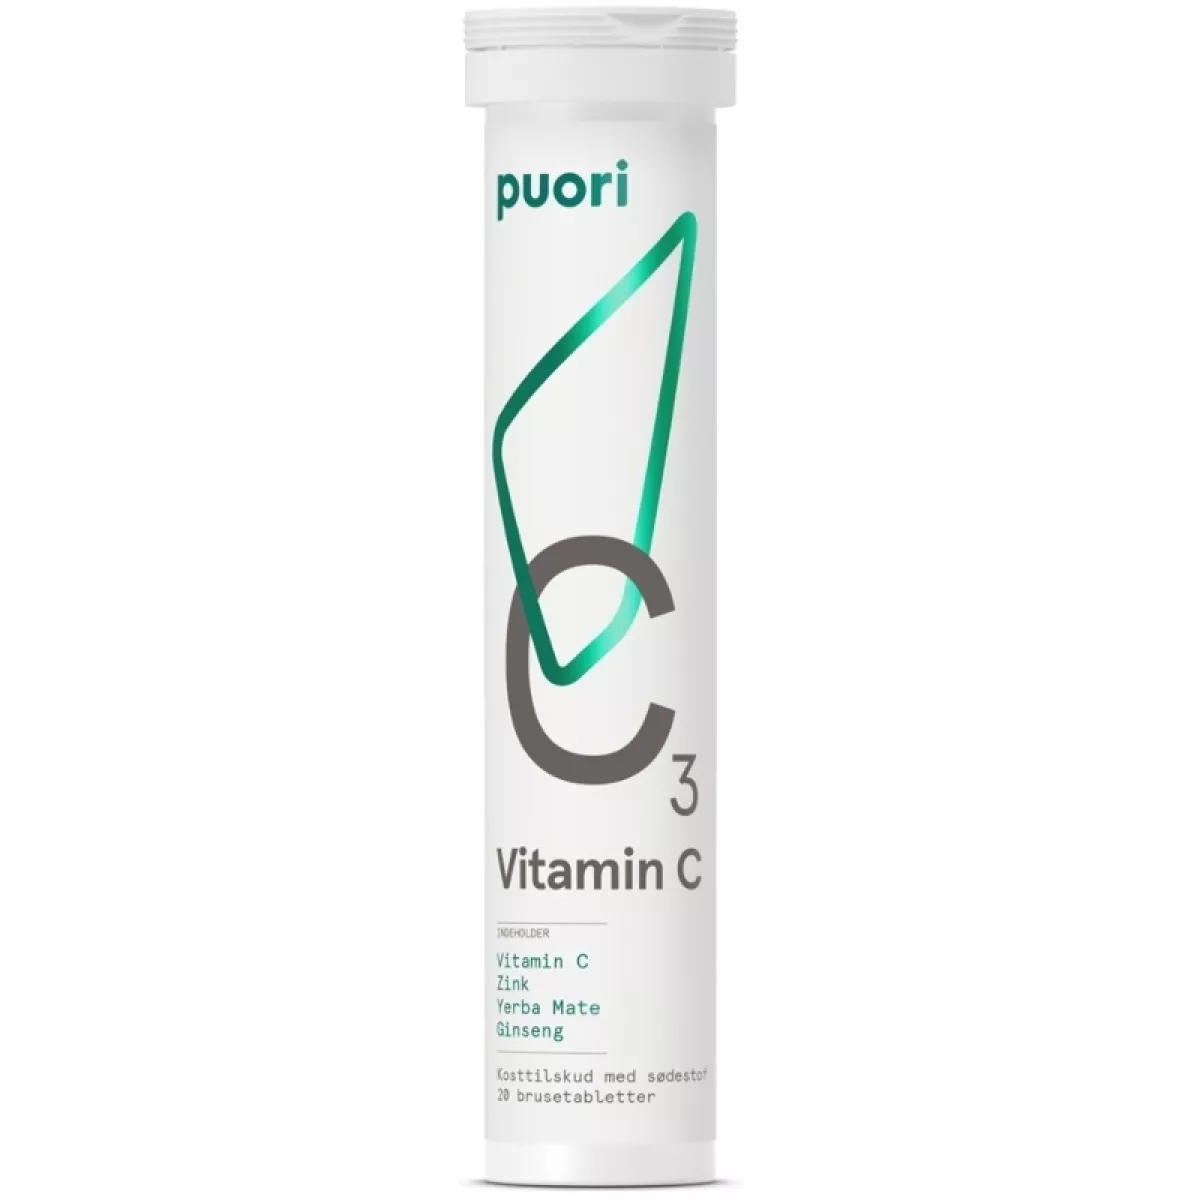 #3 - Puori Vitamin C C3 - 20 Pieces